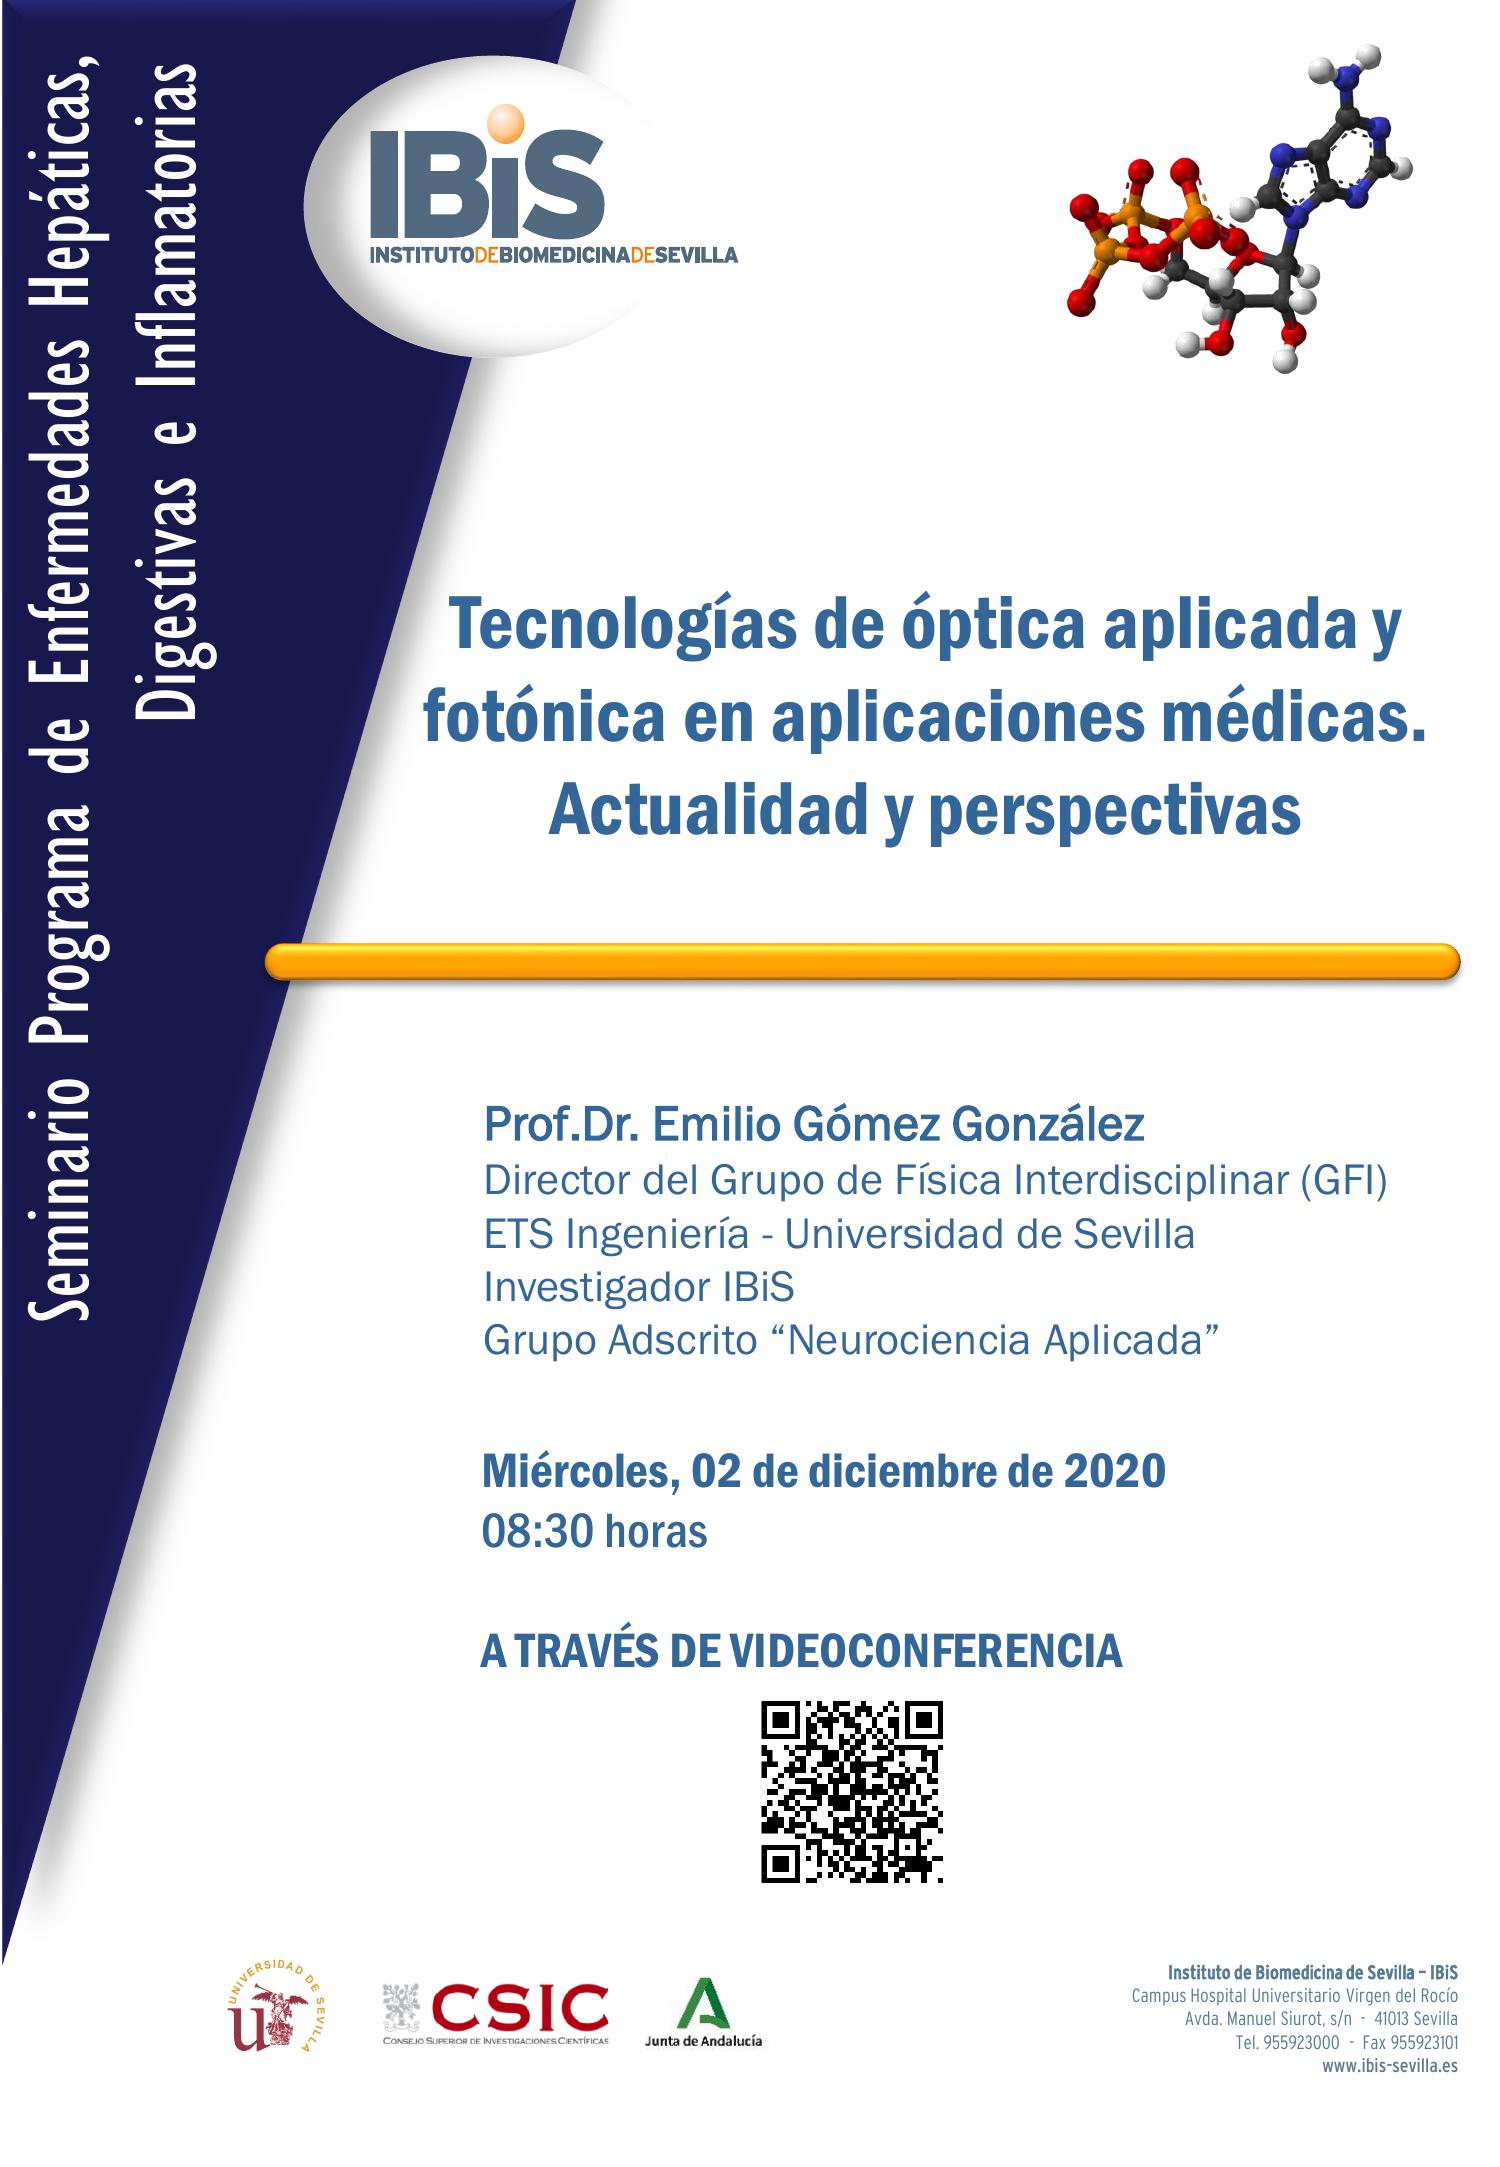 Poster: Tecnologías de óptica aplicada y fotónica en aplicaciones médicas. Actualidad y perspectivas